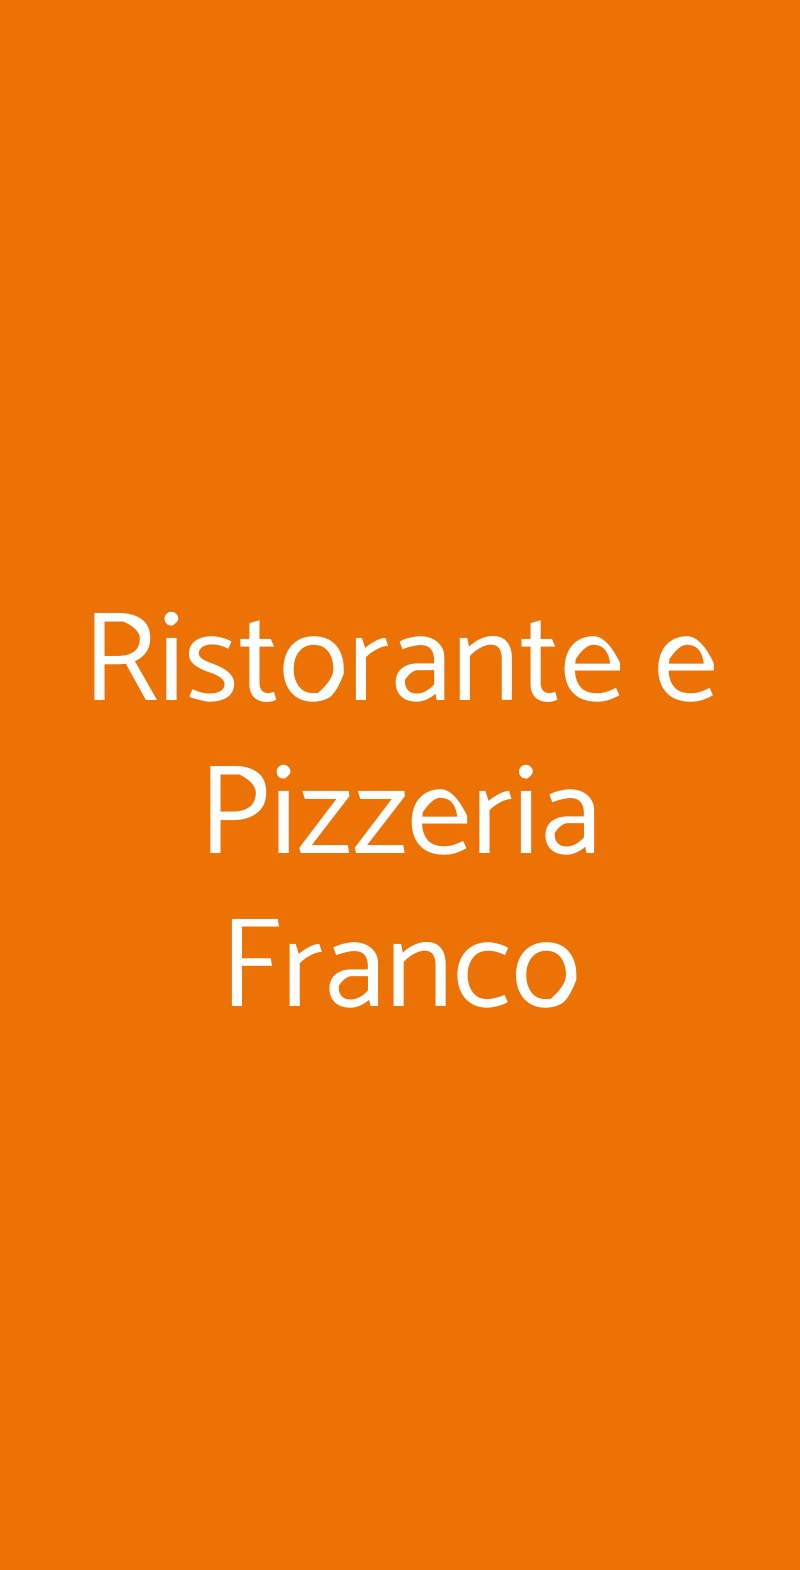 Ristorante e Pizzeria Franco Torre del Greco menù 1 pagina